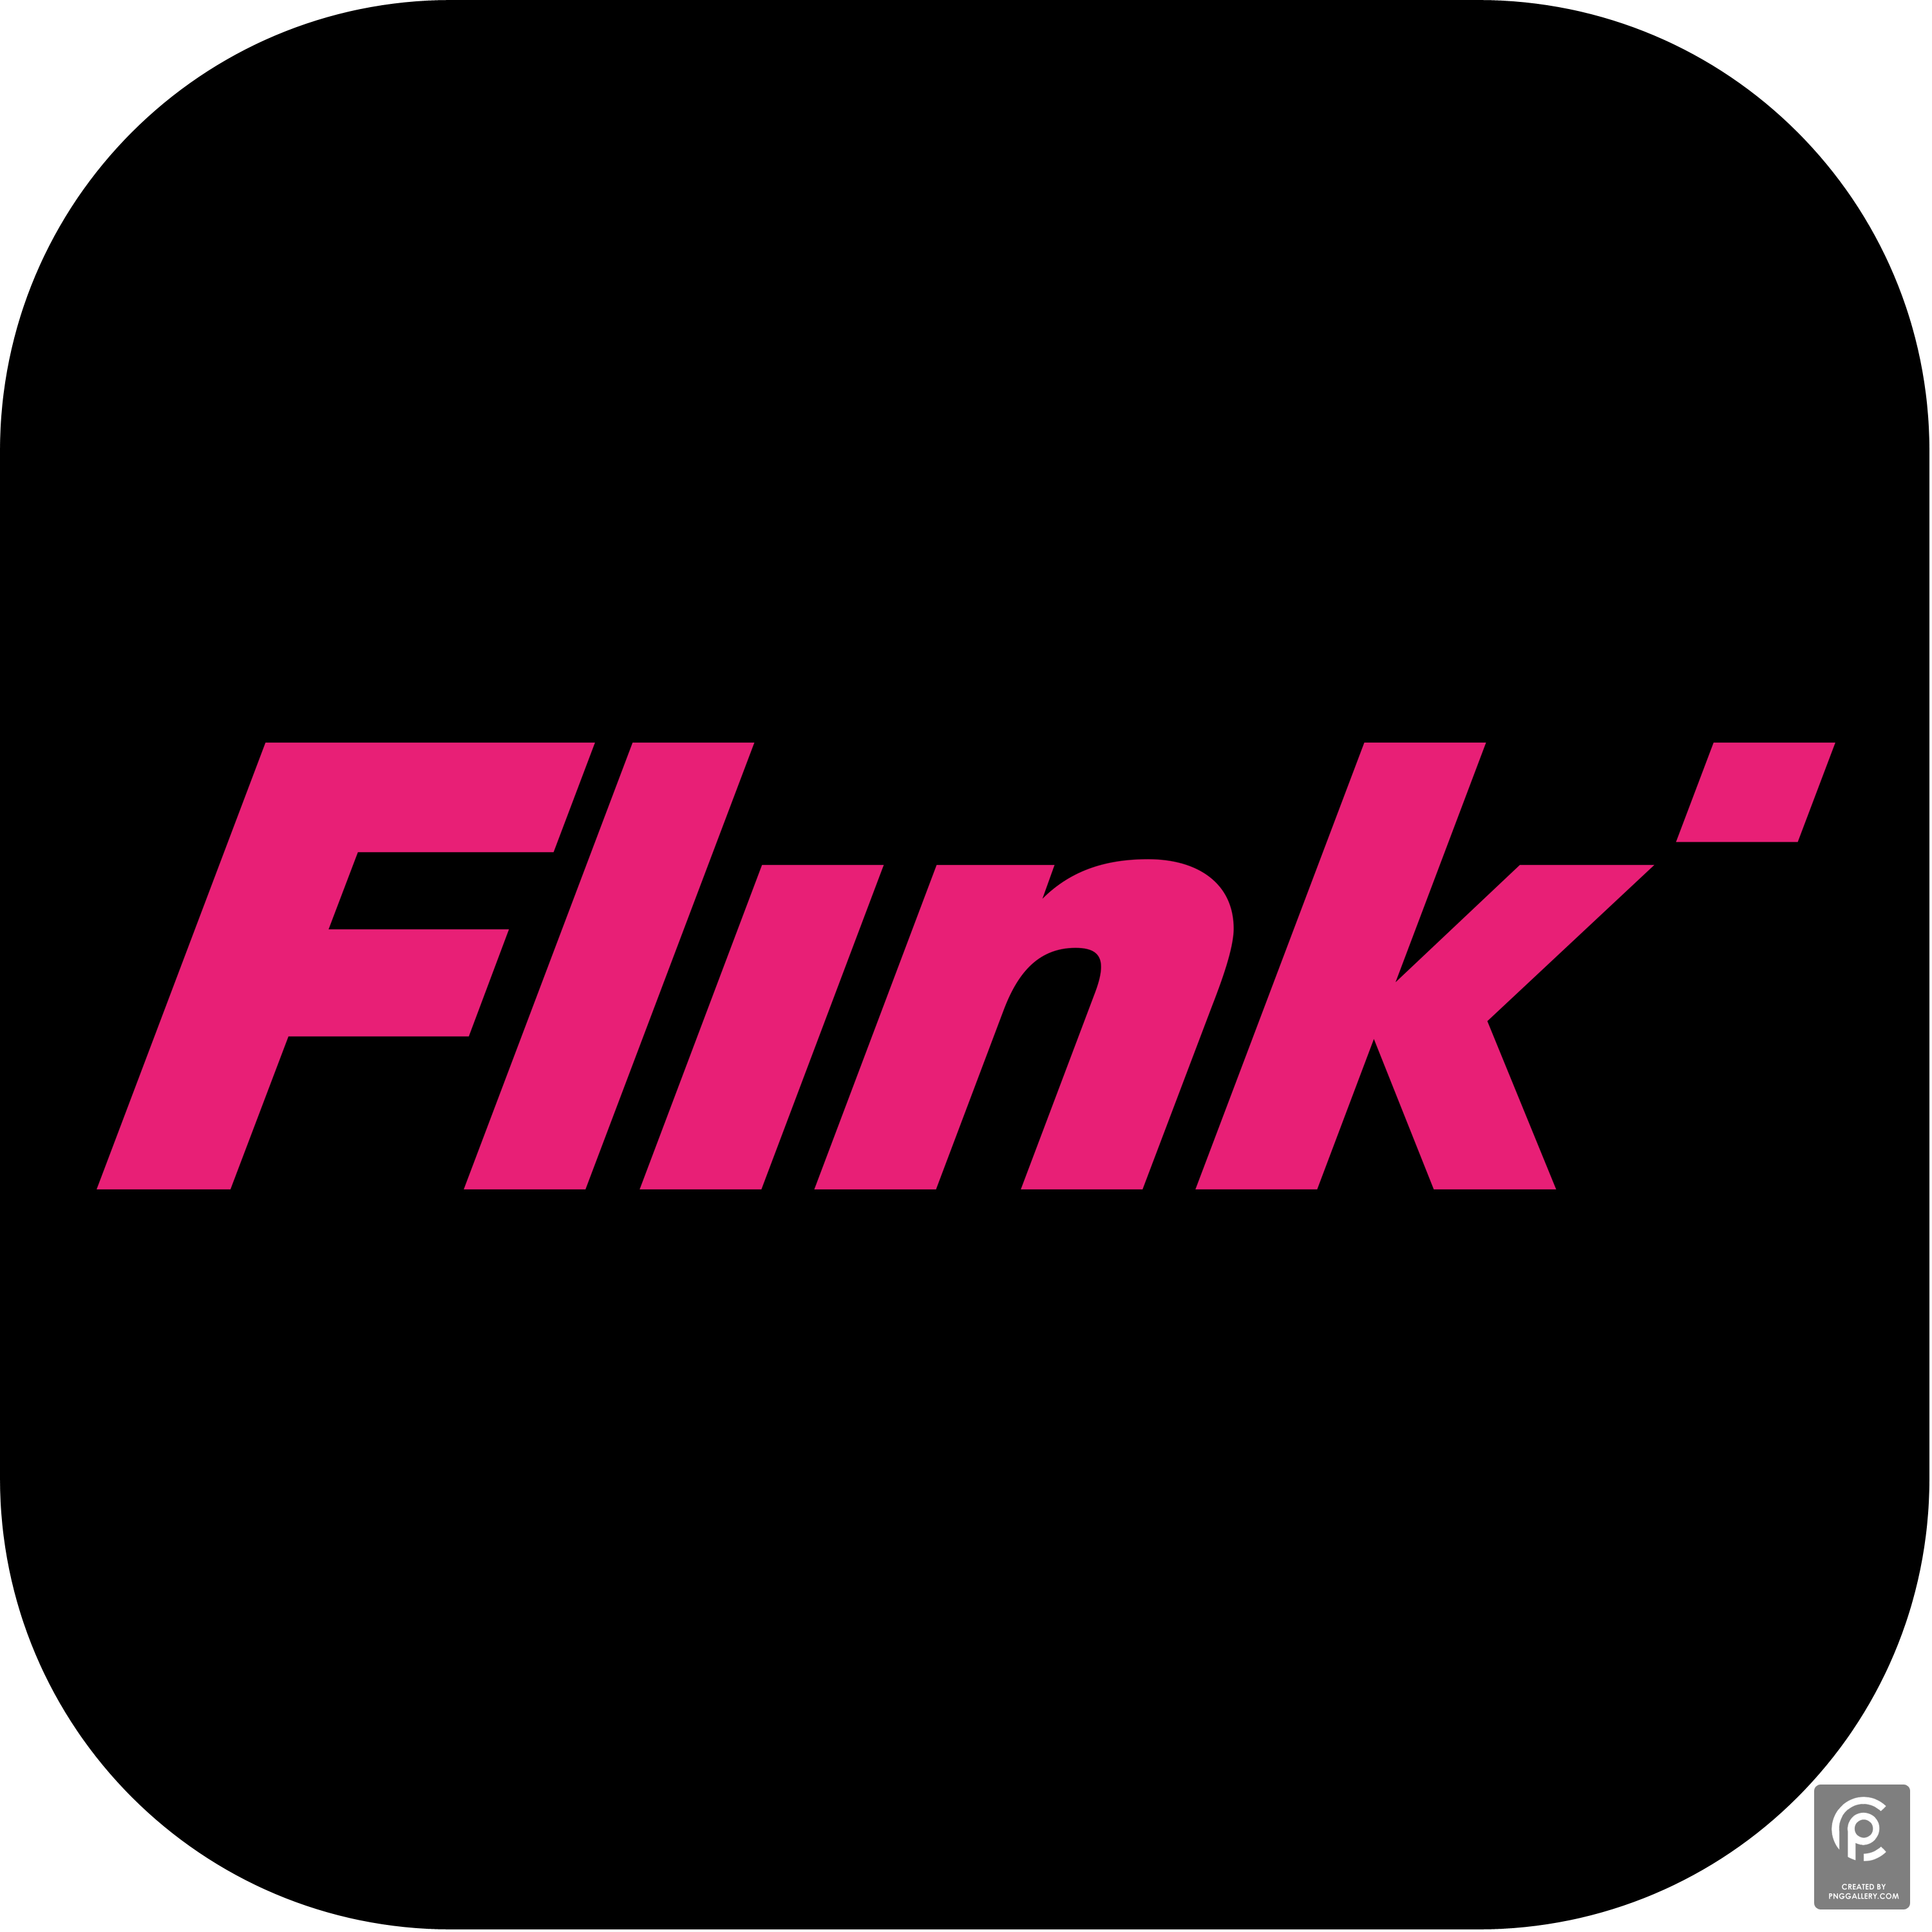 Flink 2020 Logo Transparent Picture